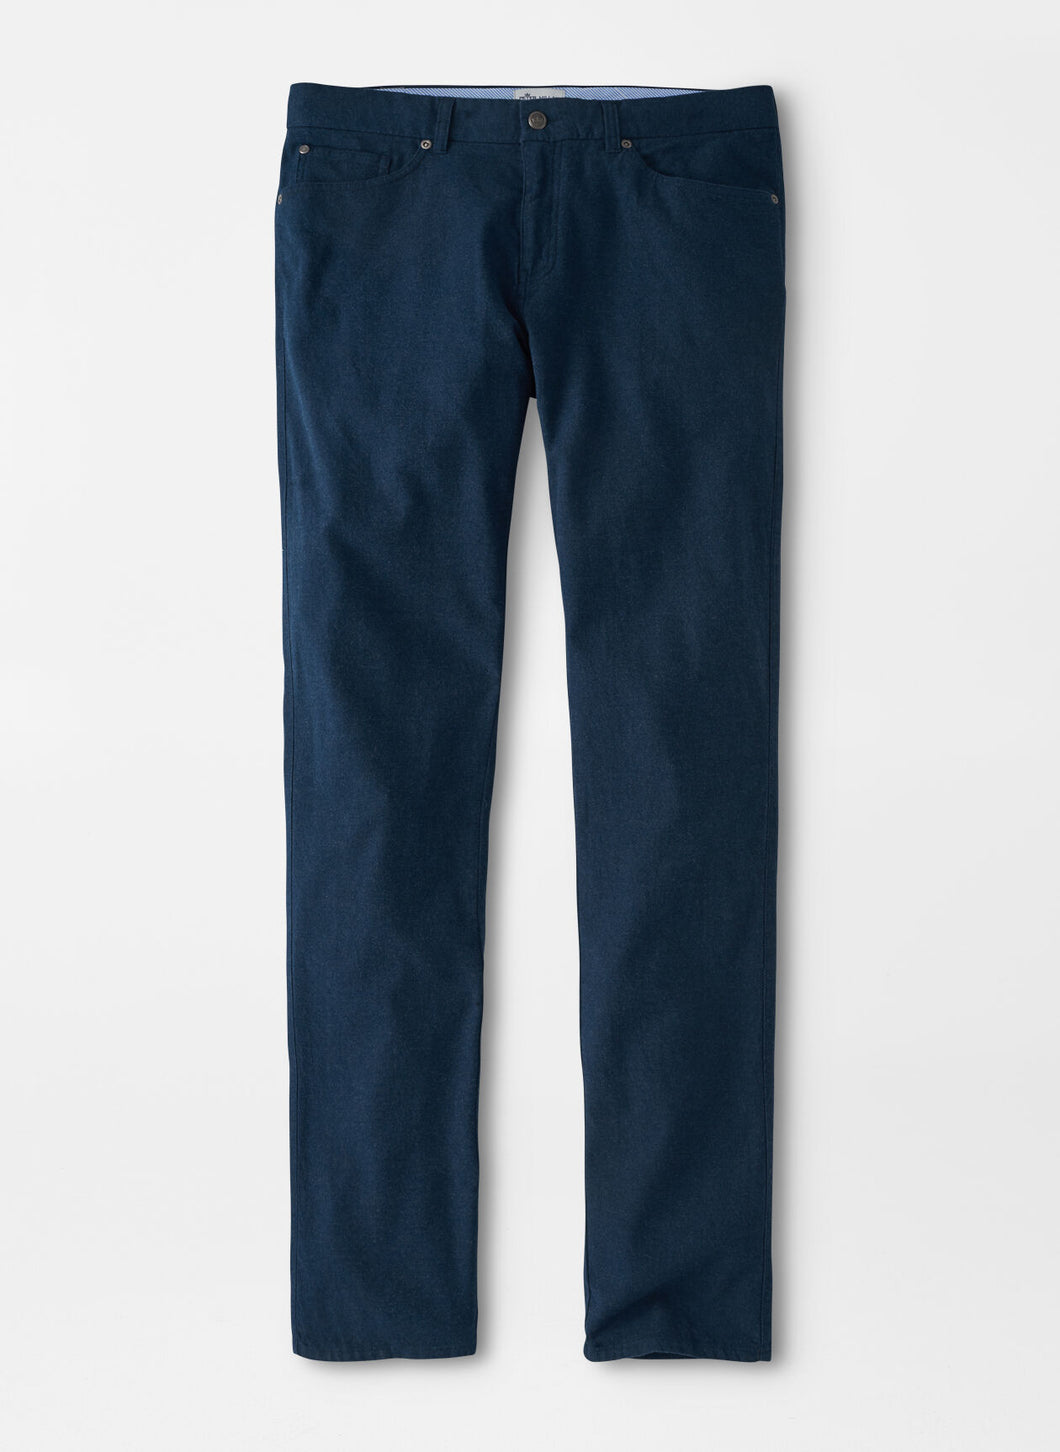 Cotton Flannel Five Pocket Pants - Atlantic Blue | Peter Millar